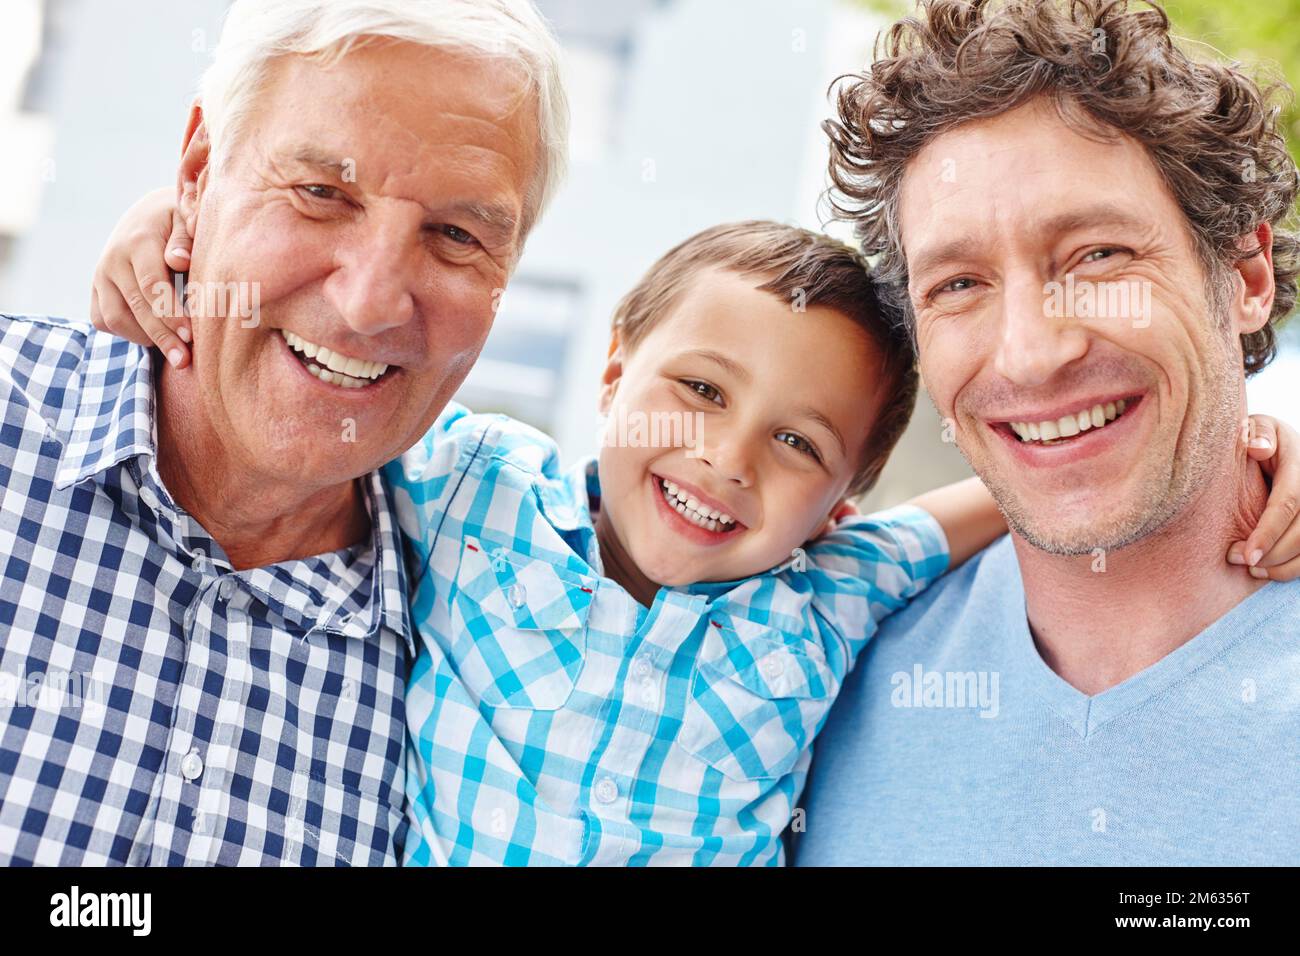 Incontra i ragazzi della famiglia. Ritratto di un ragazzino con il padre e il nonno. Foto Stock